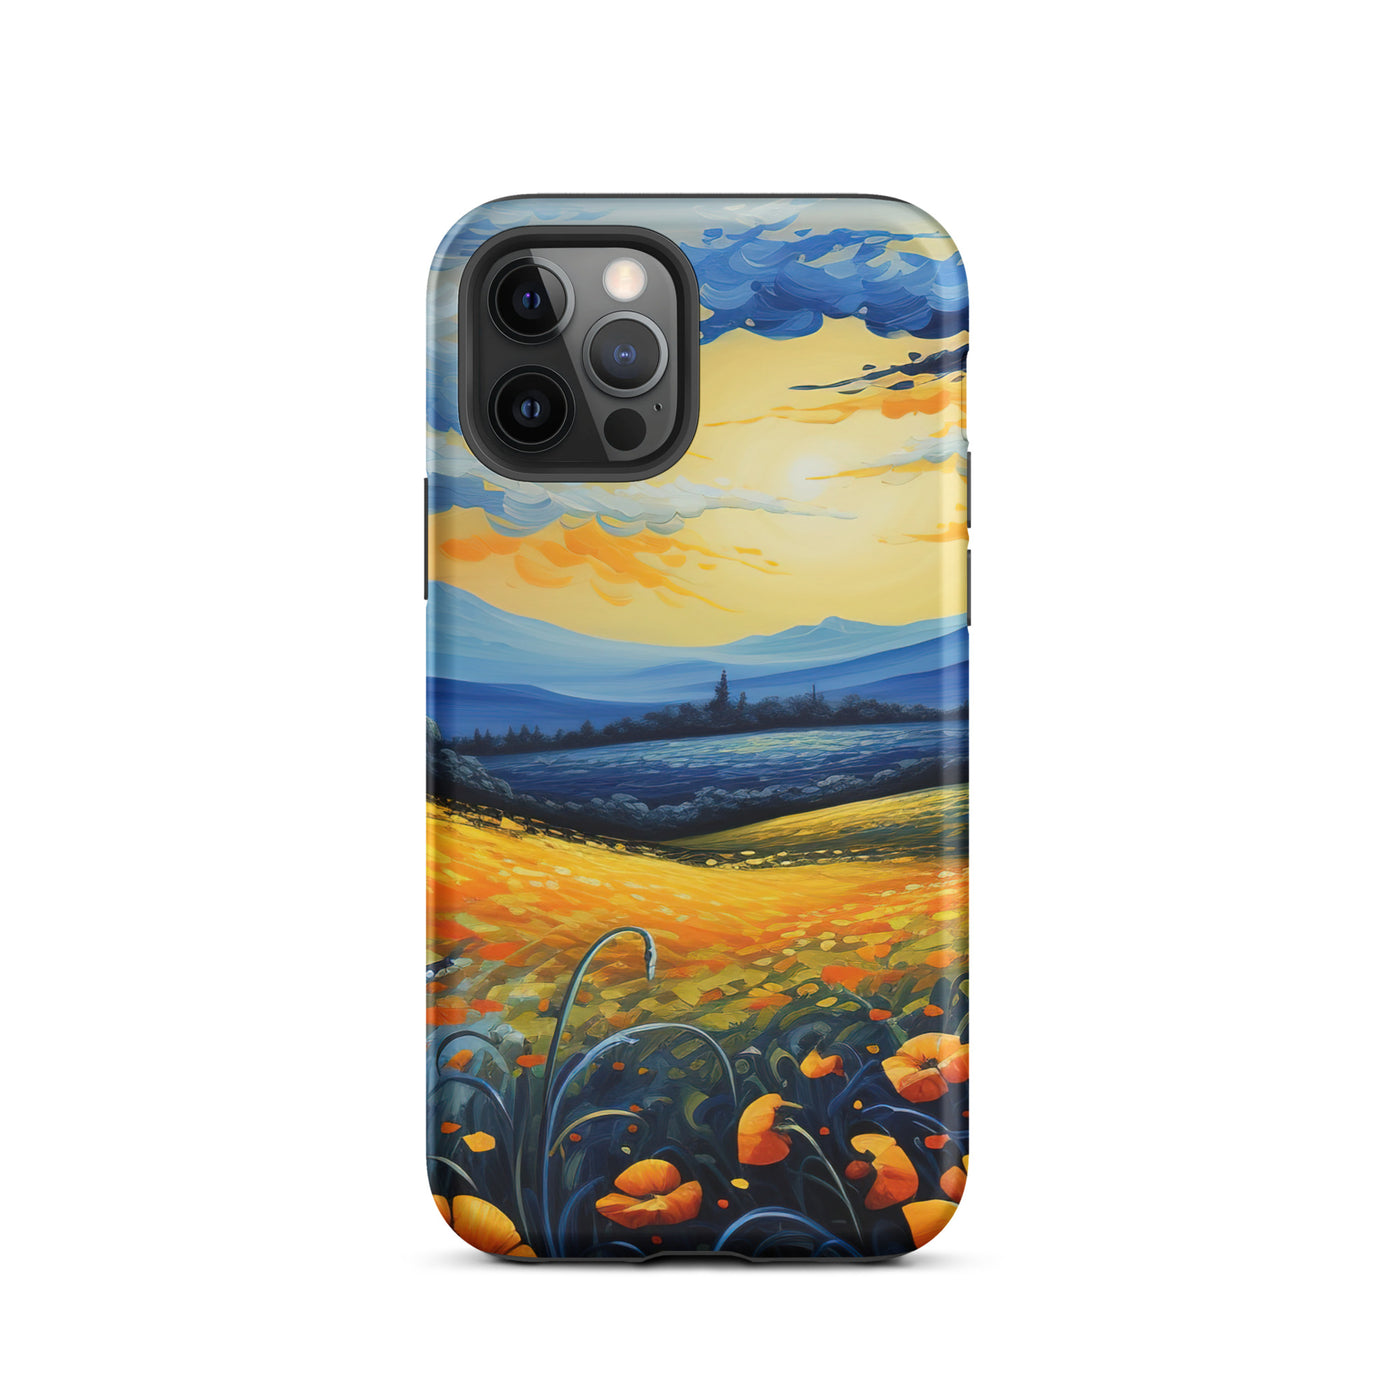 Berglandschaft mit schönen gelben Blumen - Landschaftsmalerei - iPhone Schutzhülle (robust) berge xxx iPhone 12 Pro